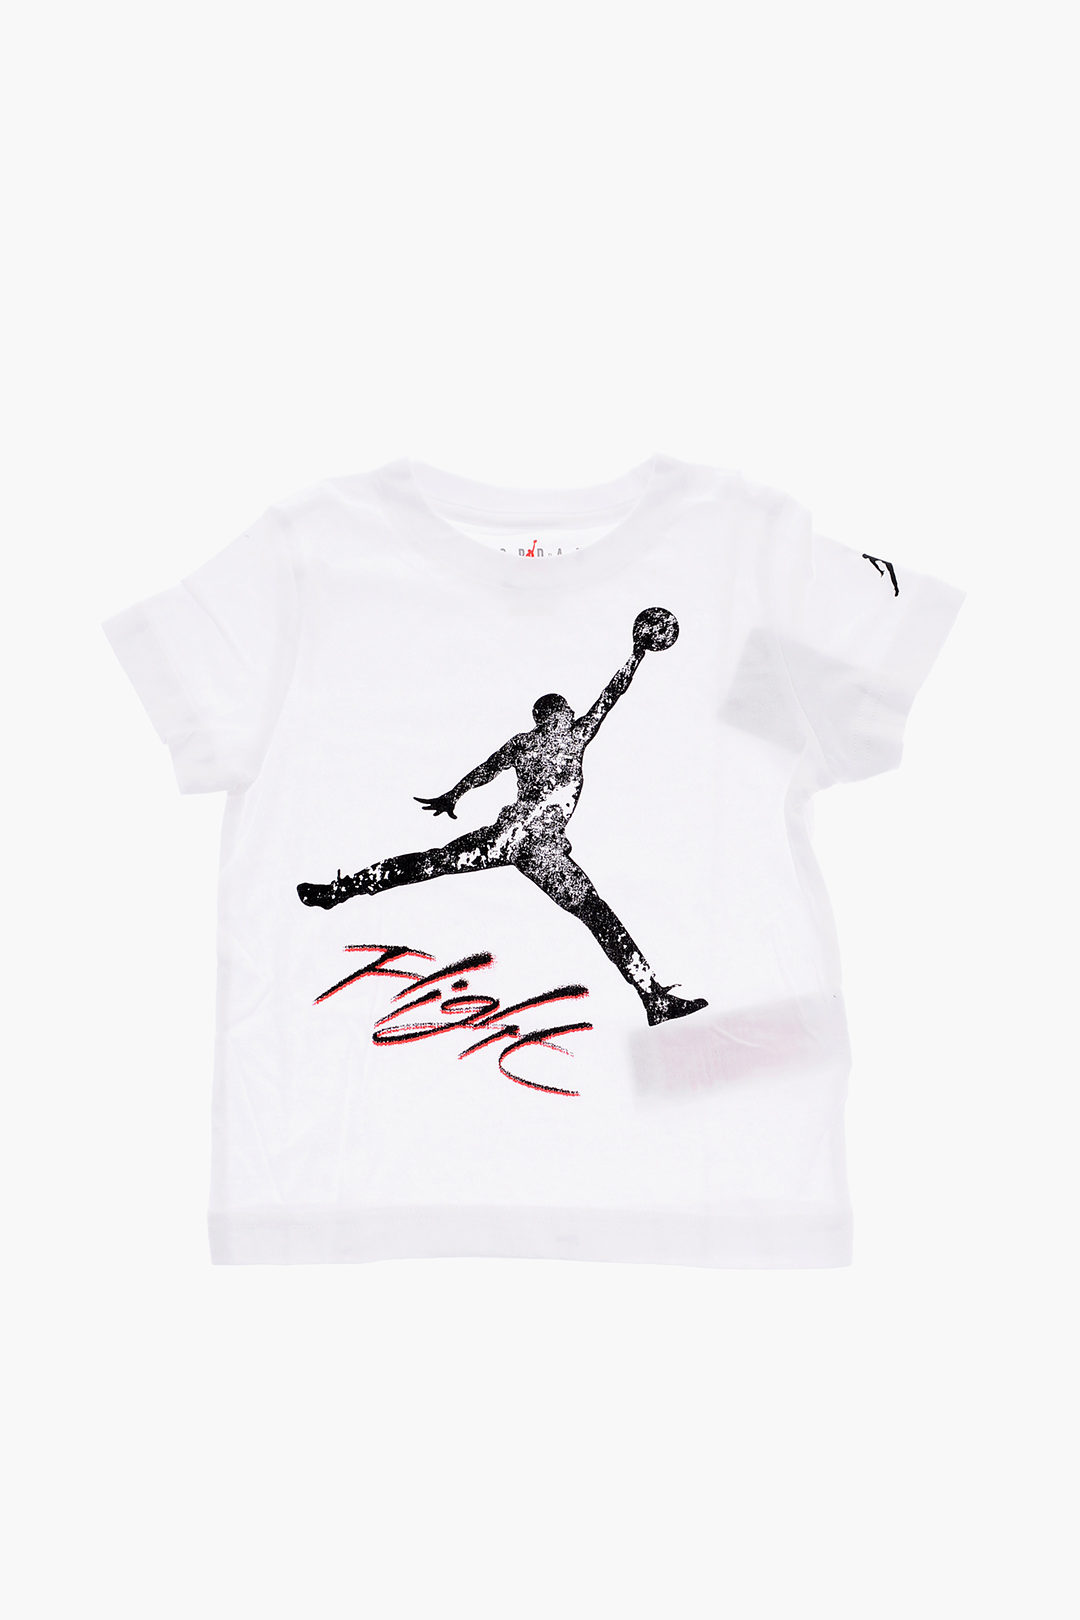 Air Jordan Wing It T-shirt Kids White